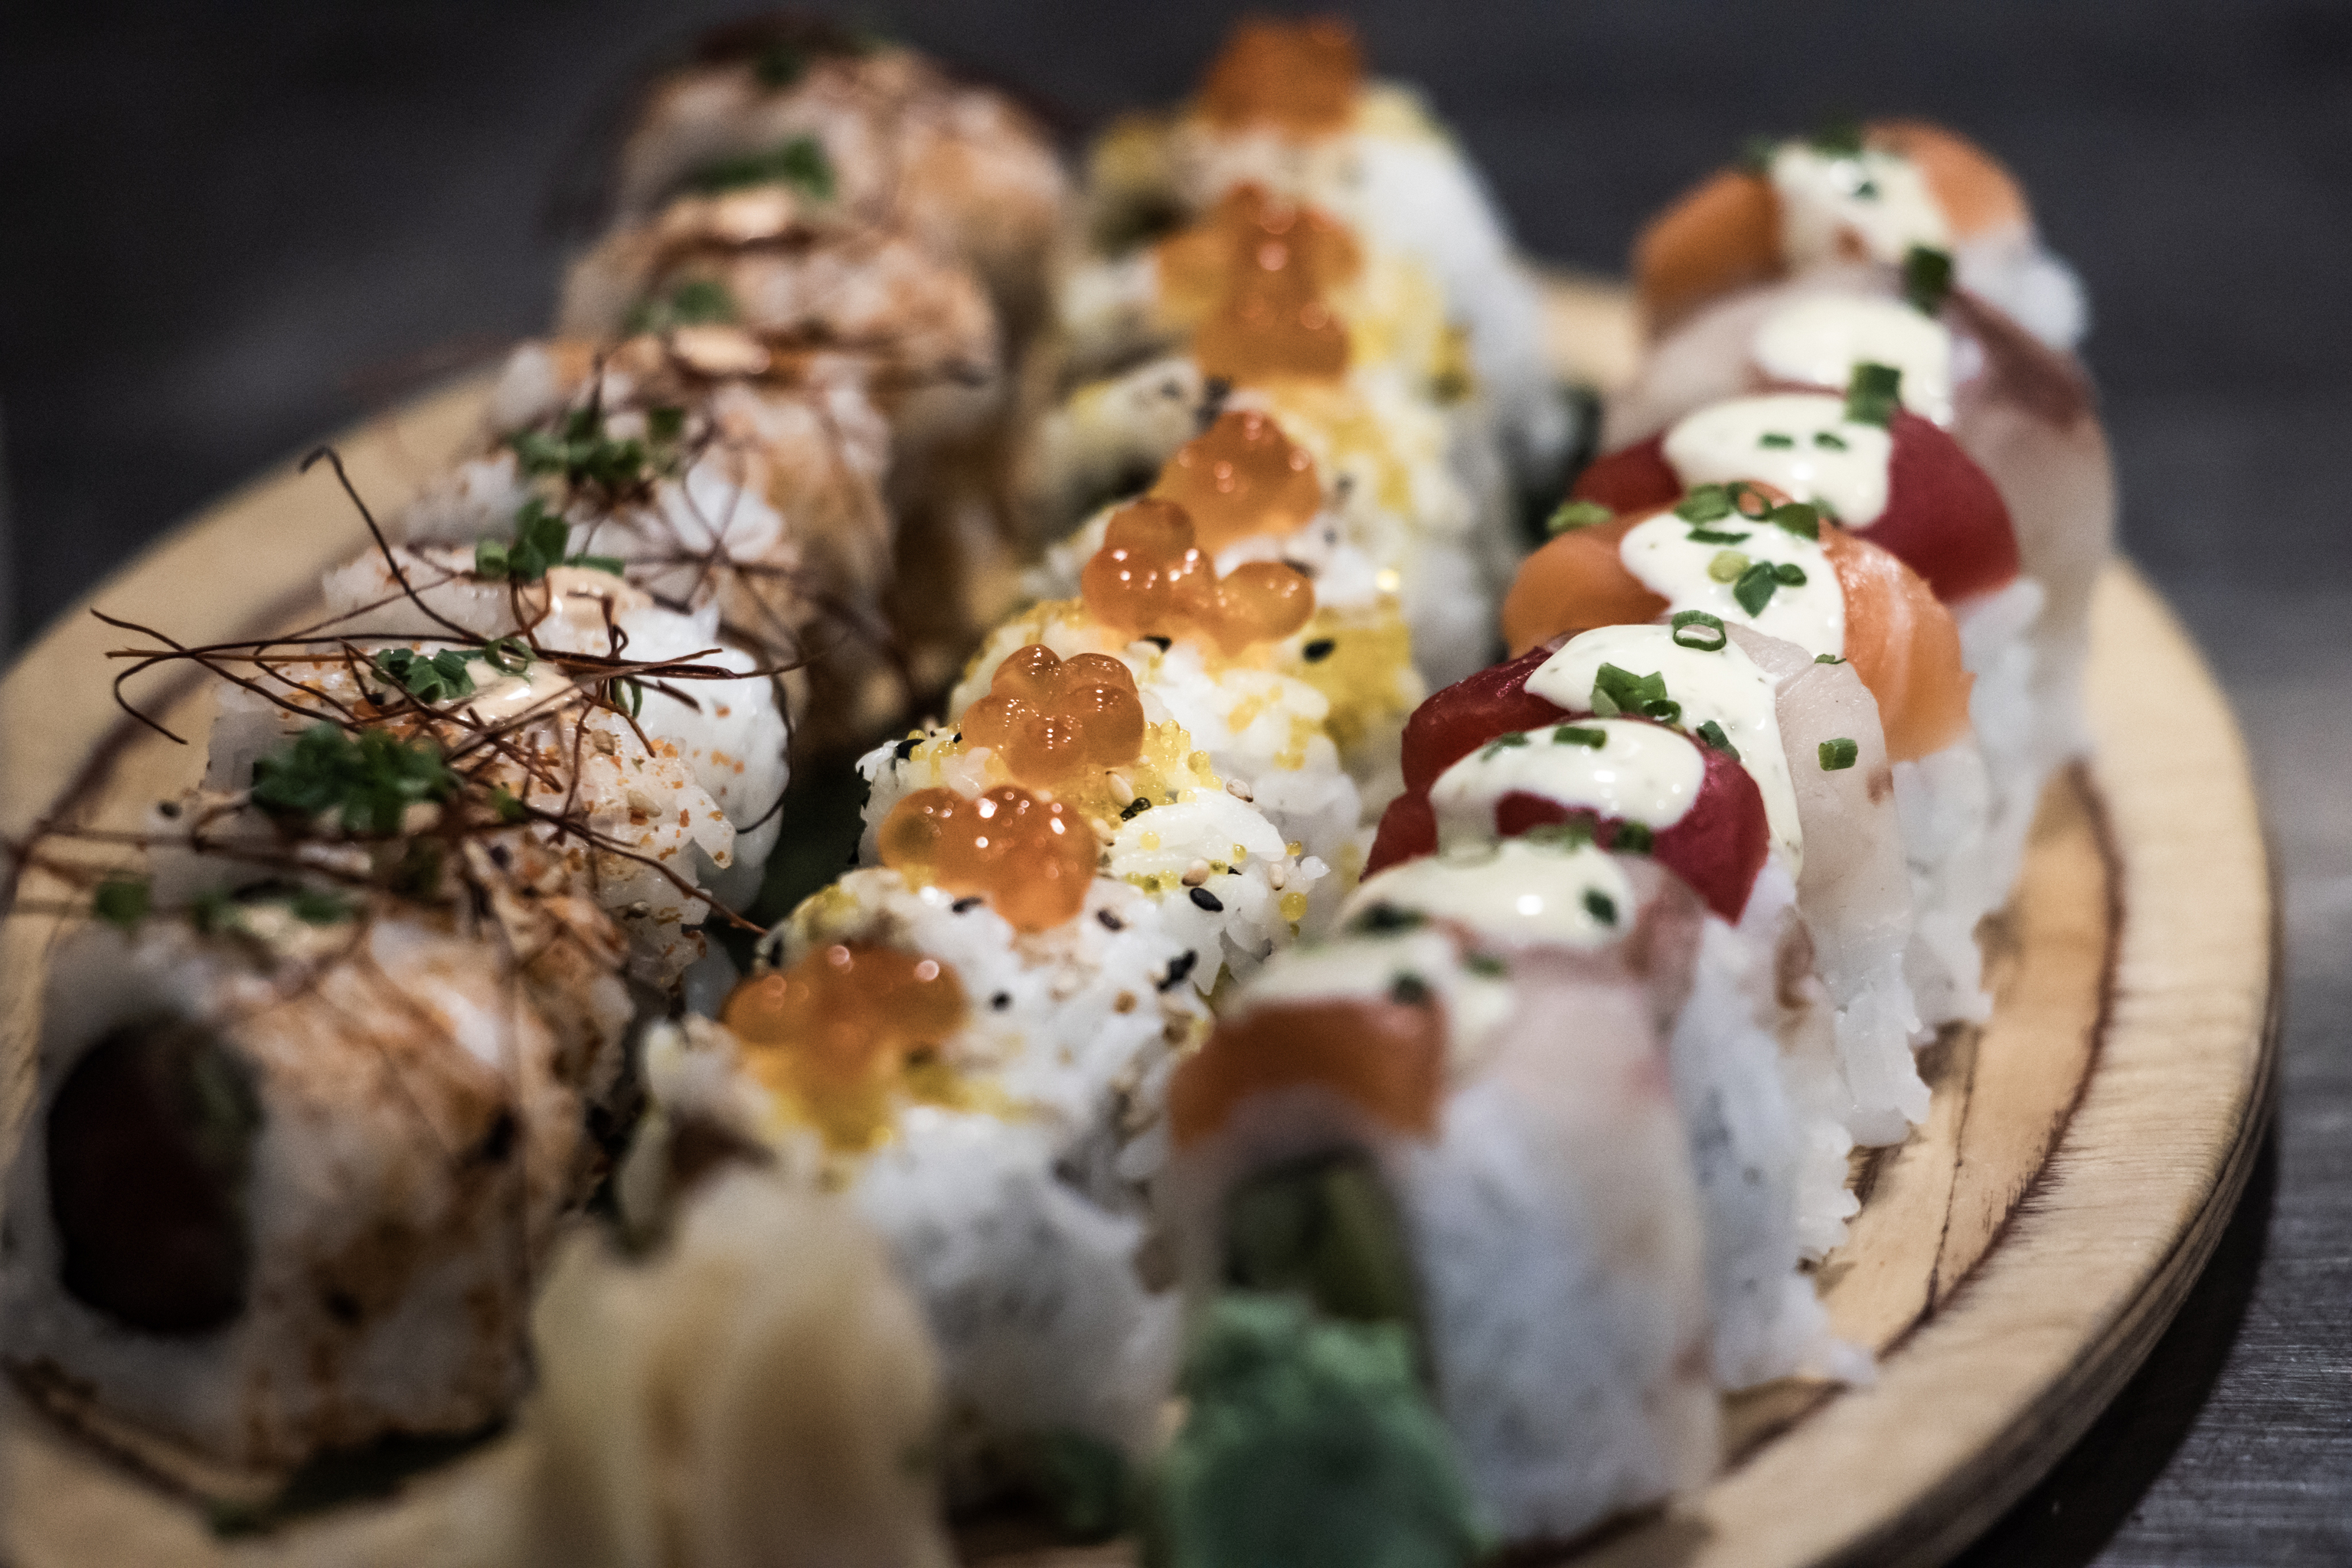 El sushi, una de las especialidades del grupo.